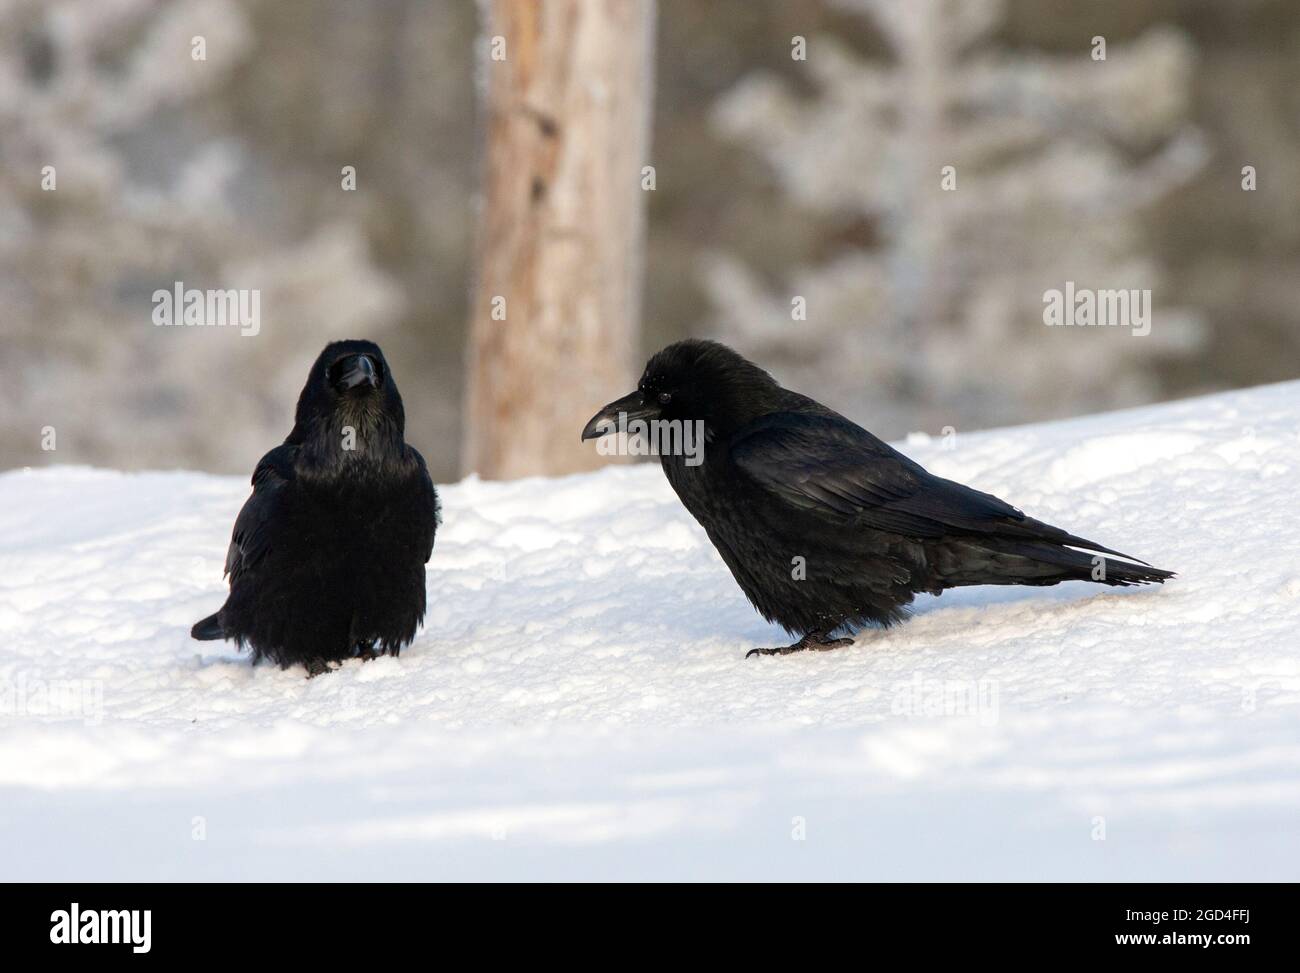 Corbeau commun (Corvus corax) dans la neige en hiver Banque D'Images